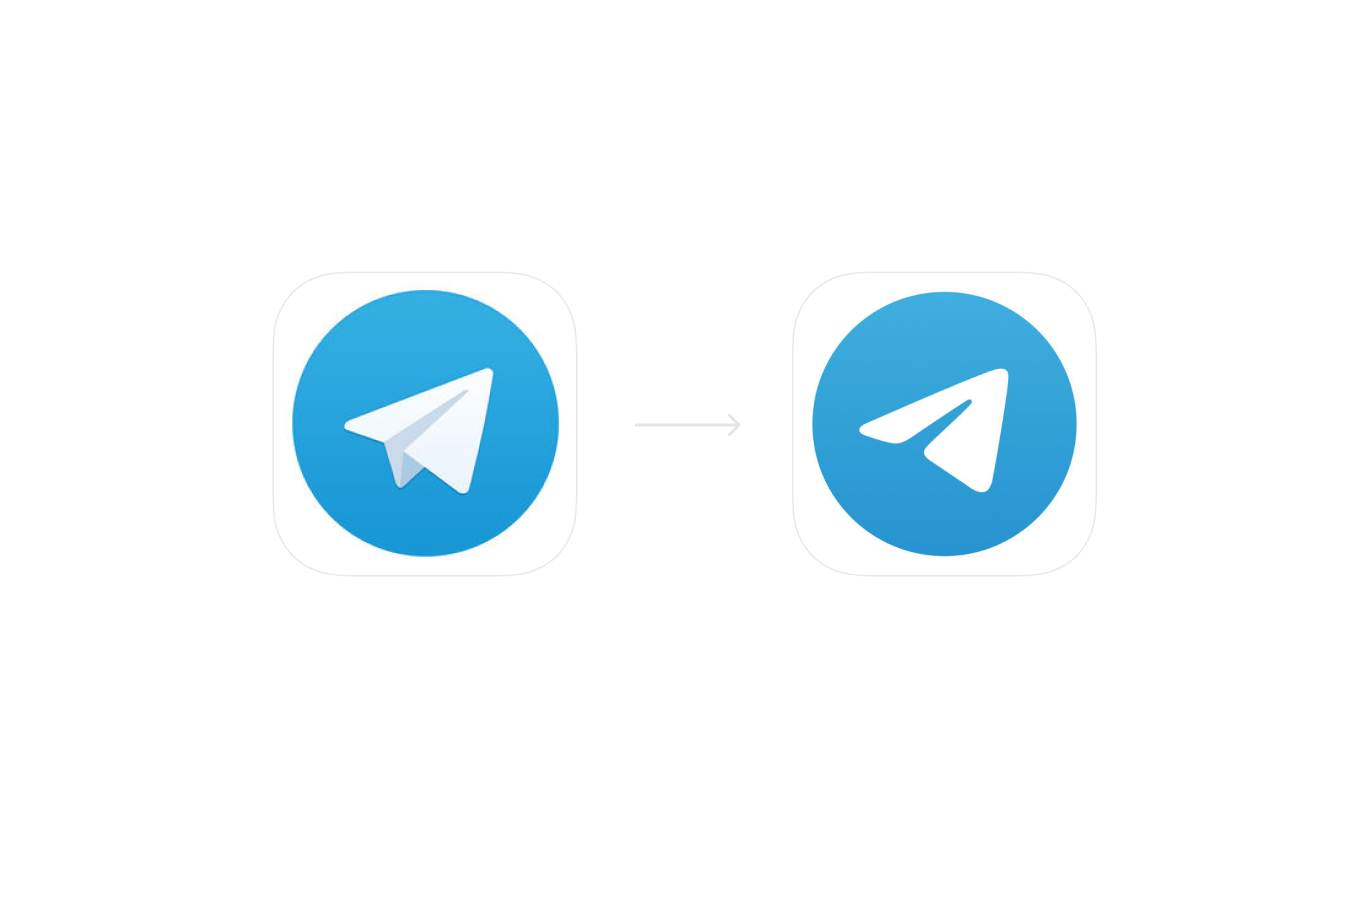 Горловой телеграмм. Значе телеграм. Иконка телеграмм. Логотип Telegram. Пиктограмма телеграмм.